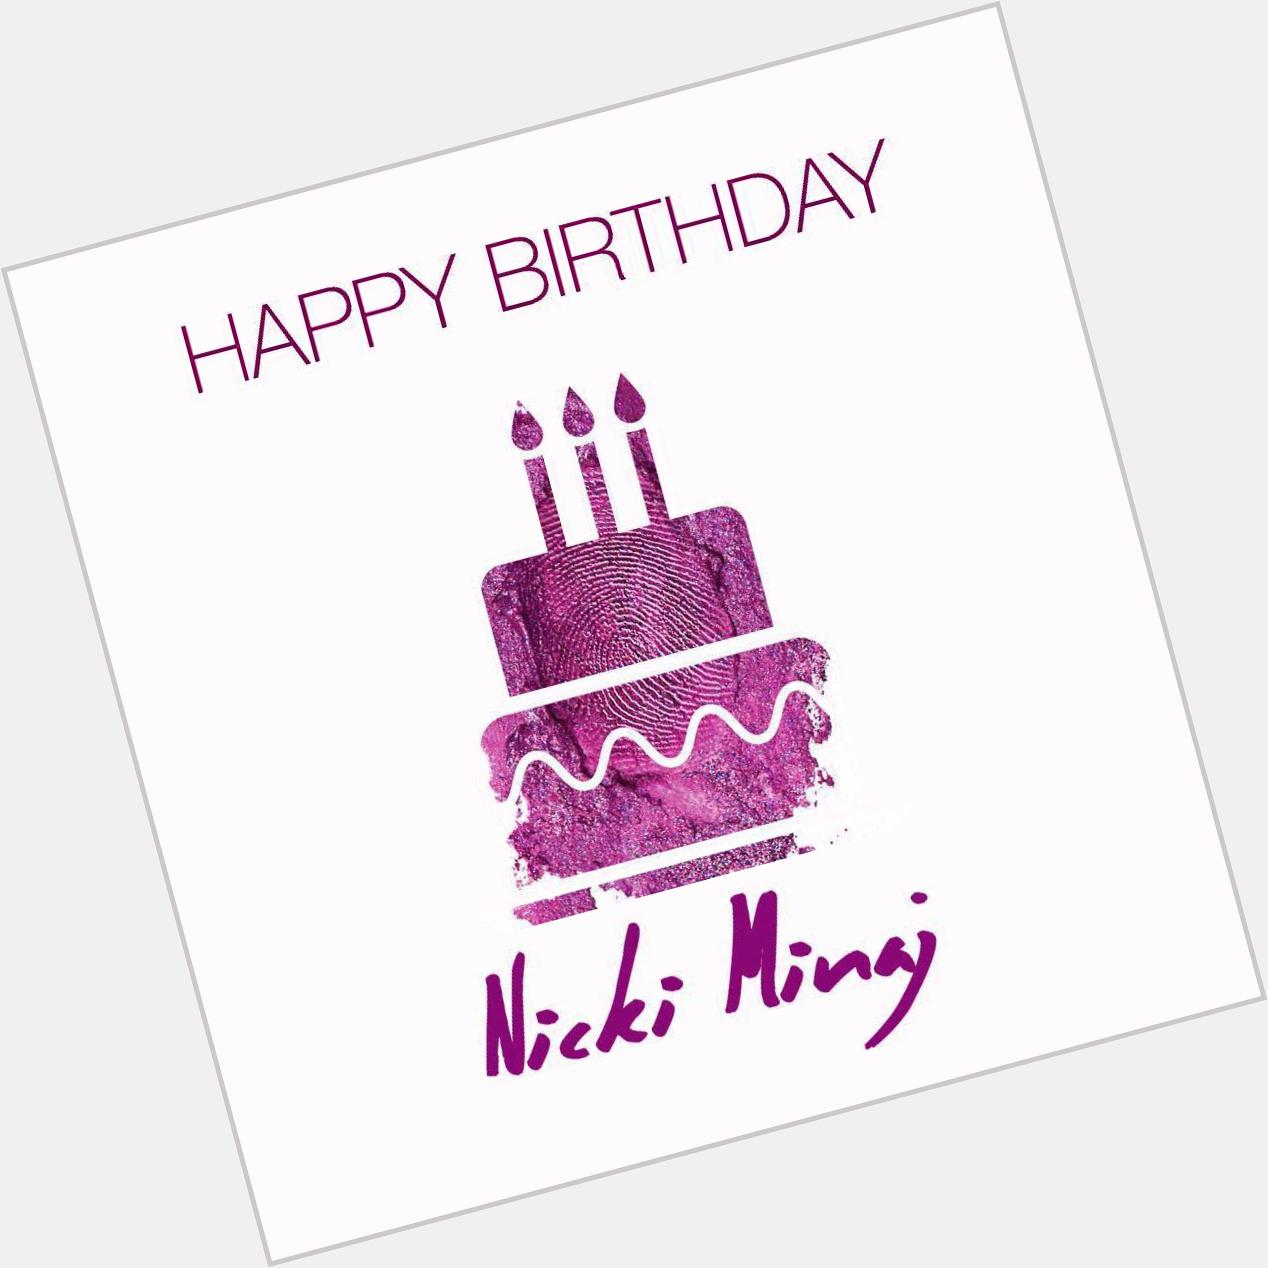 " REmessage To Wish Nicki Minaj A Happy Birthday! 